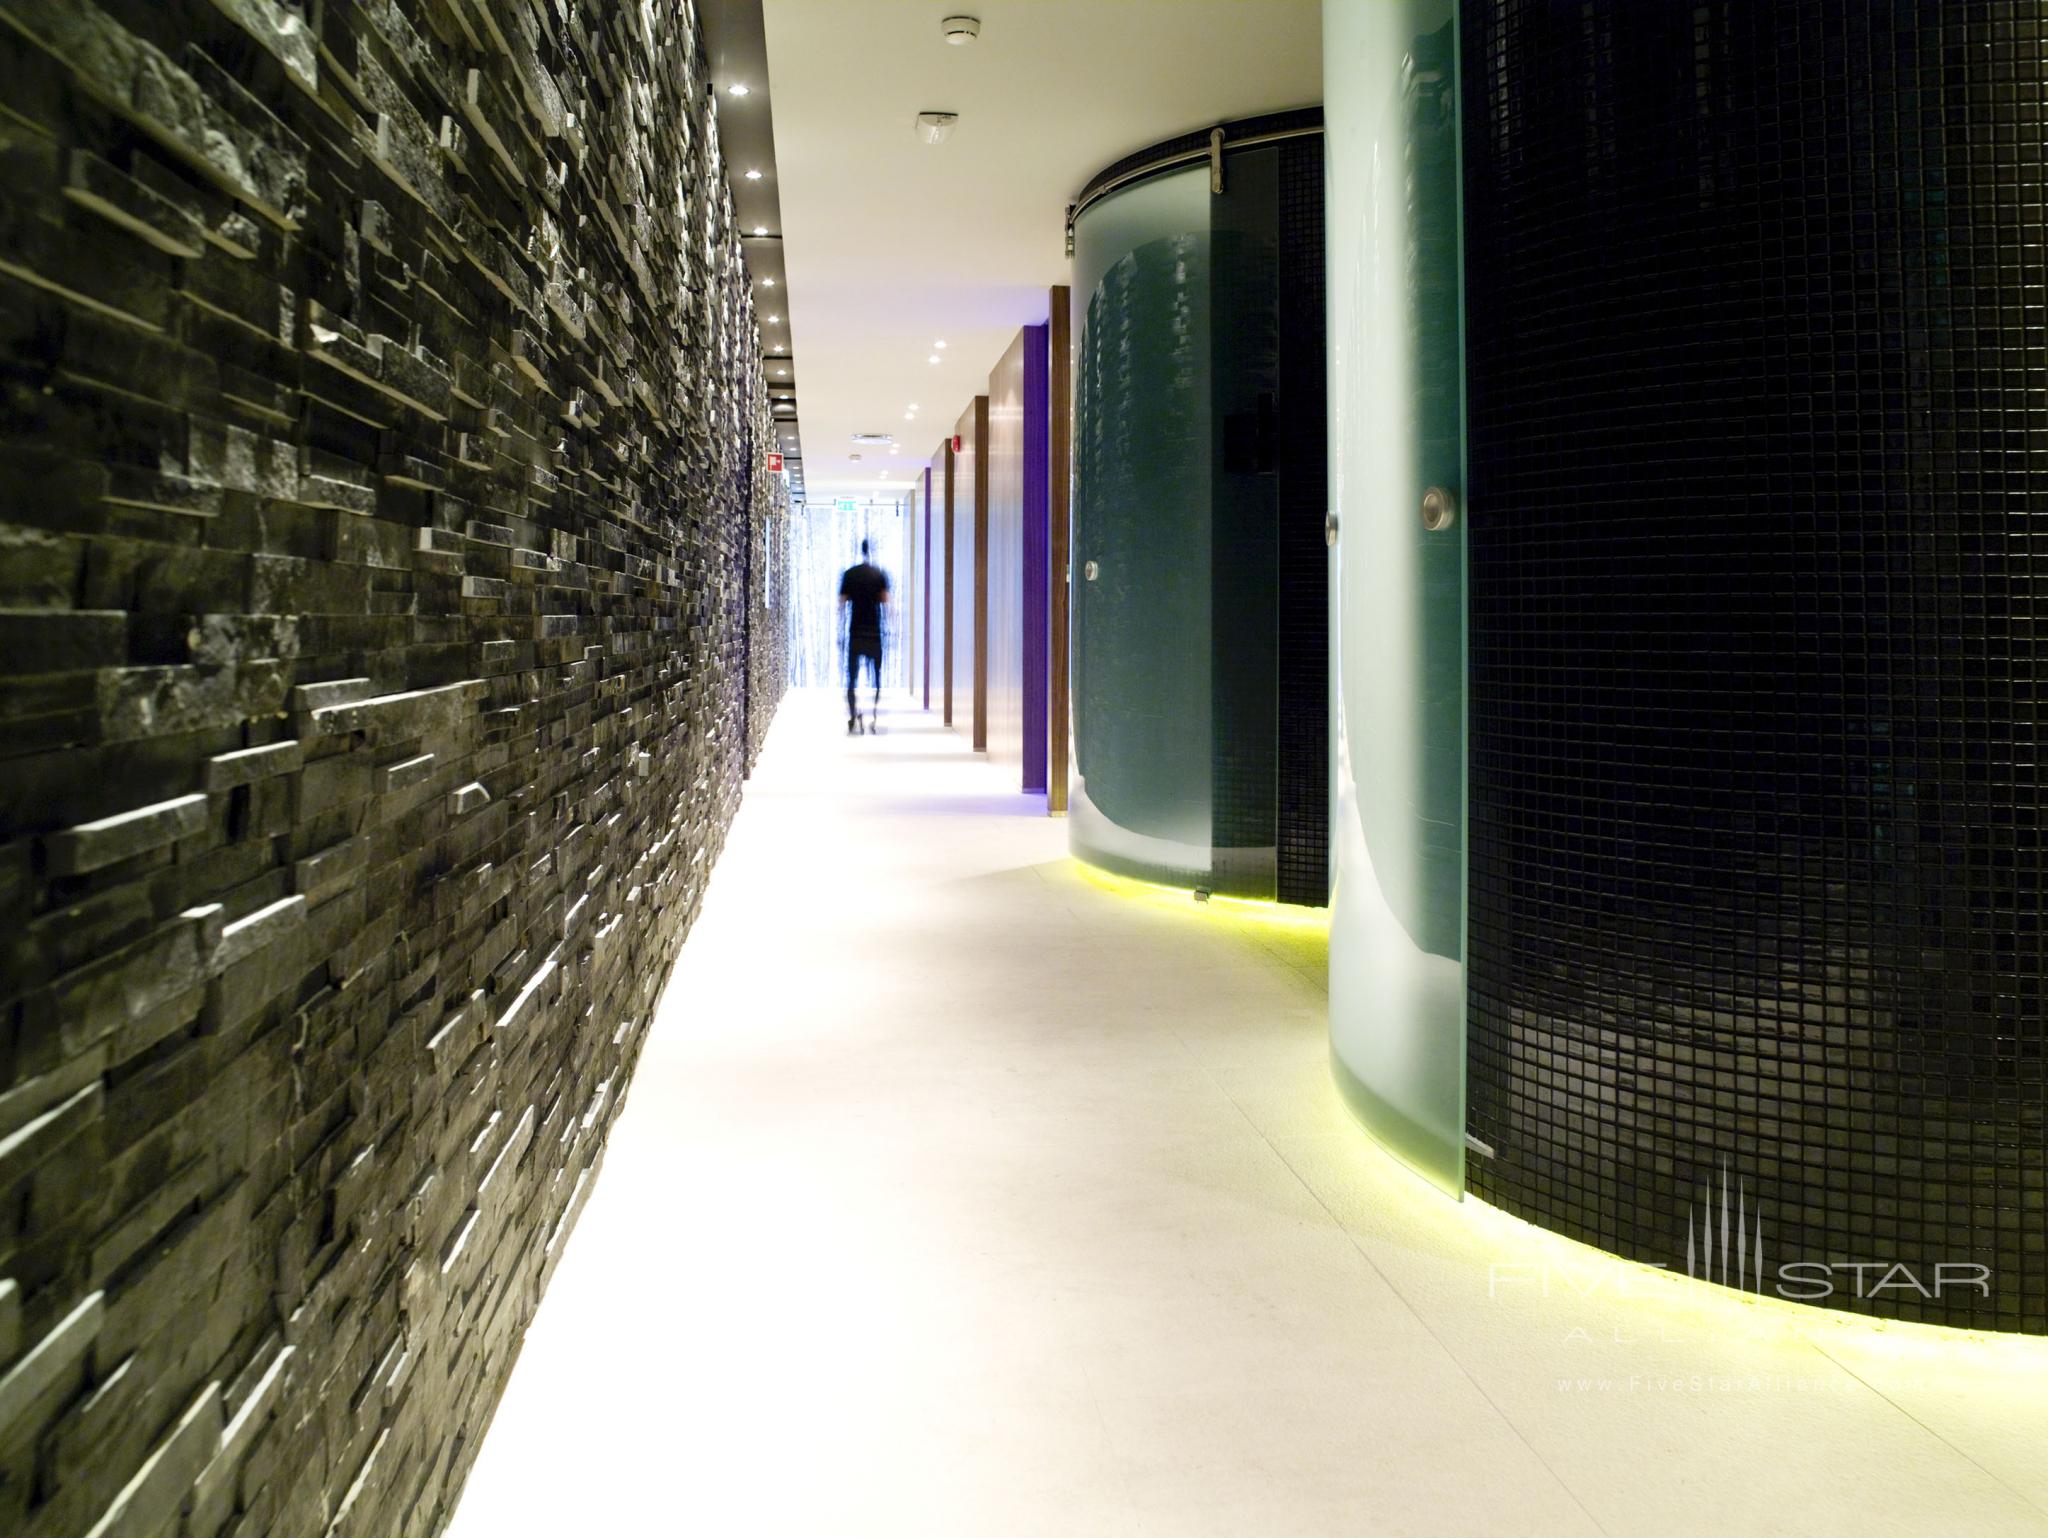 Artesia spa Corridor at The Grand Hotel, Oslo